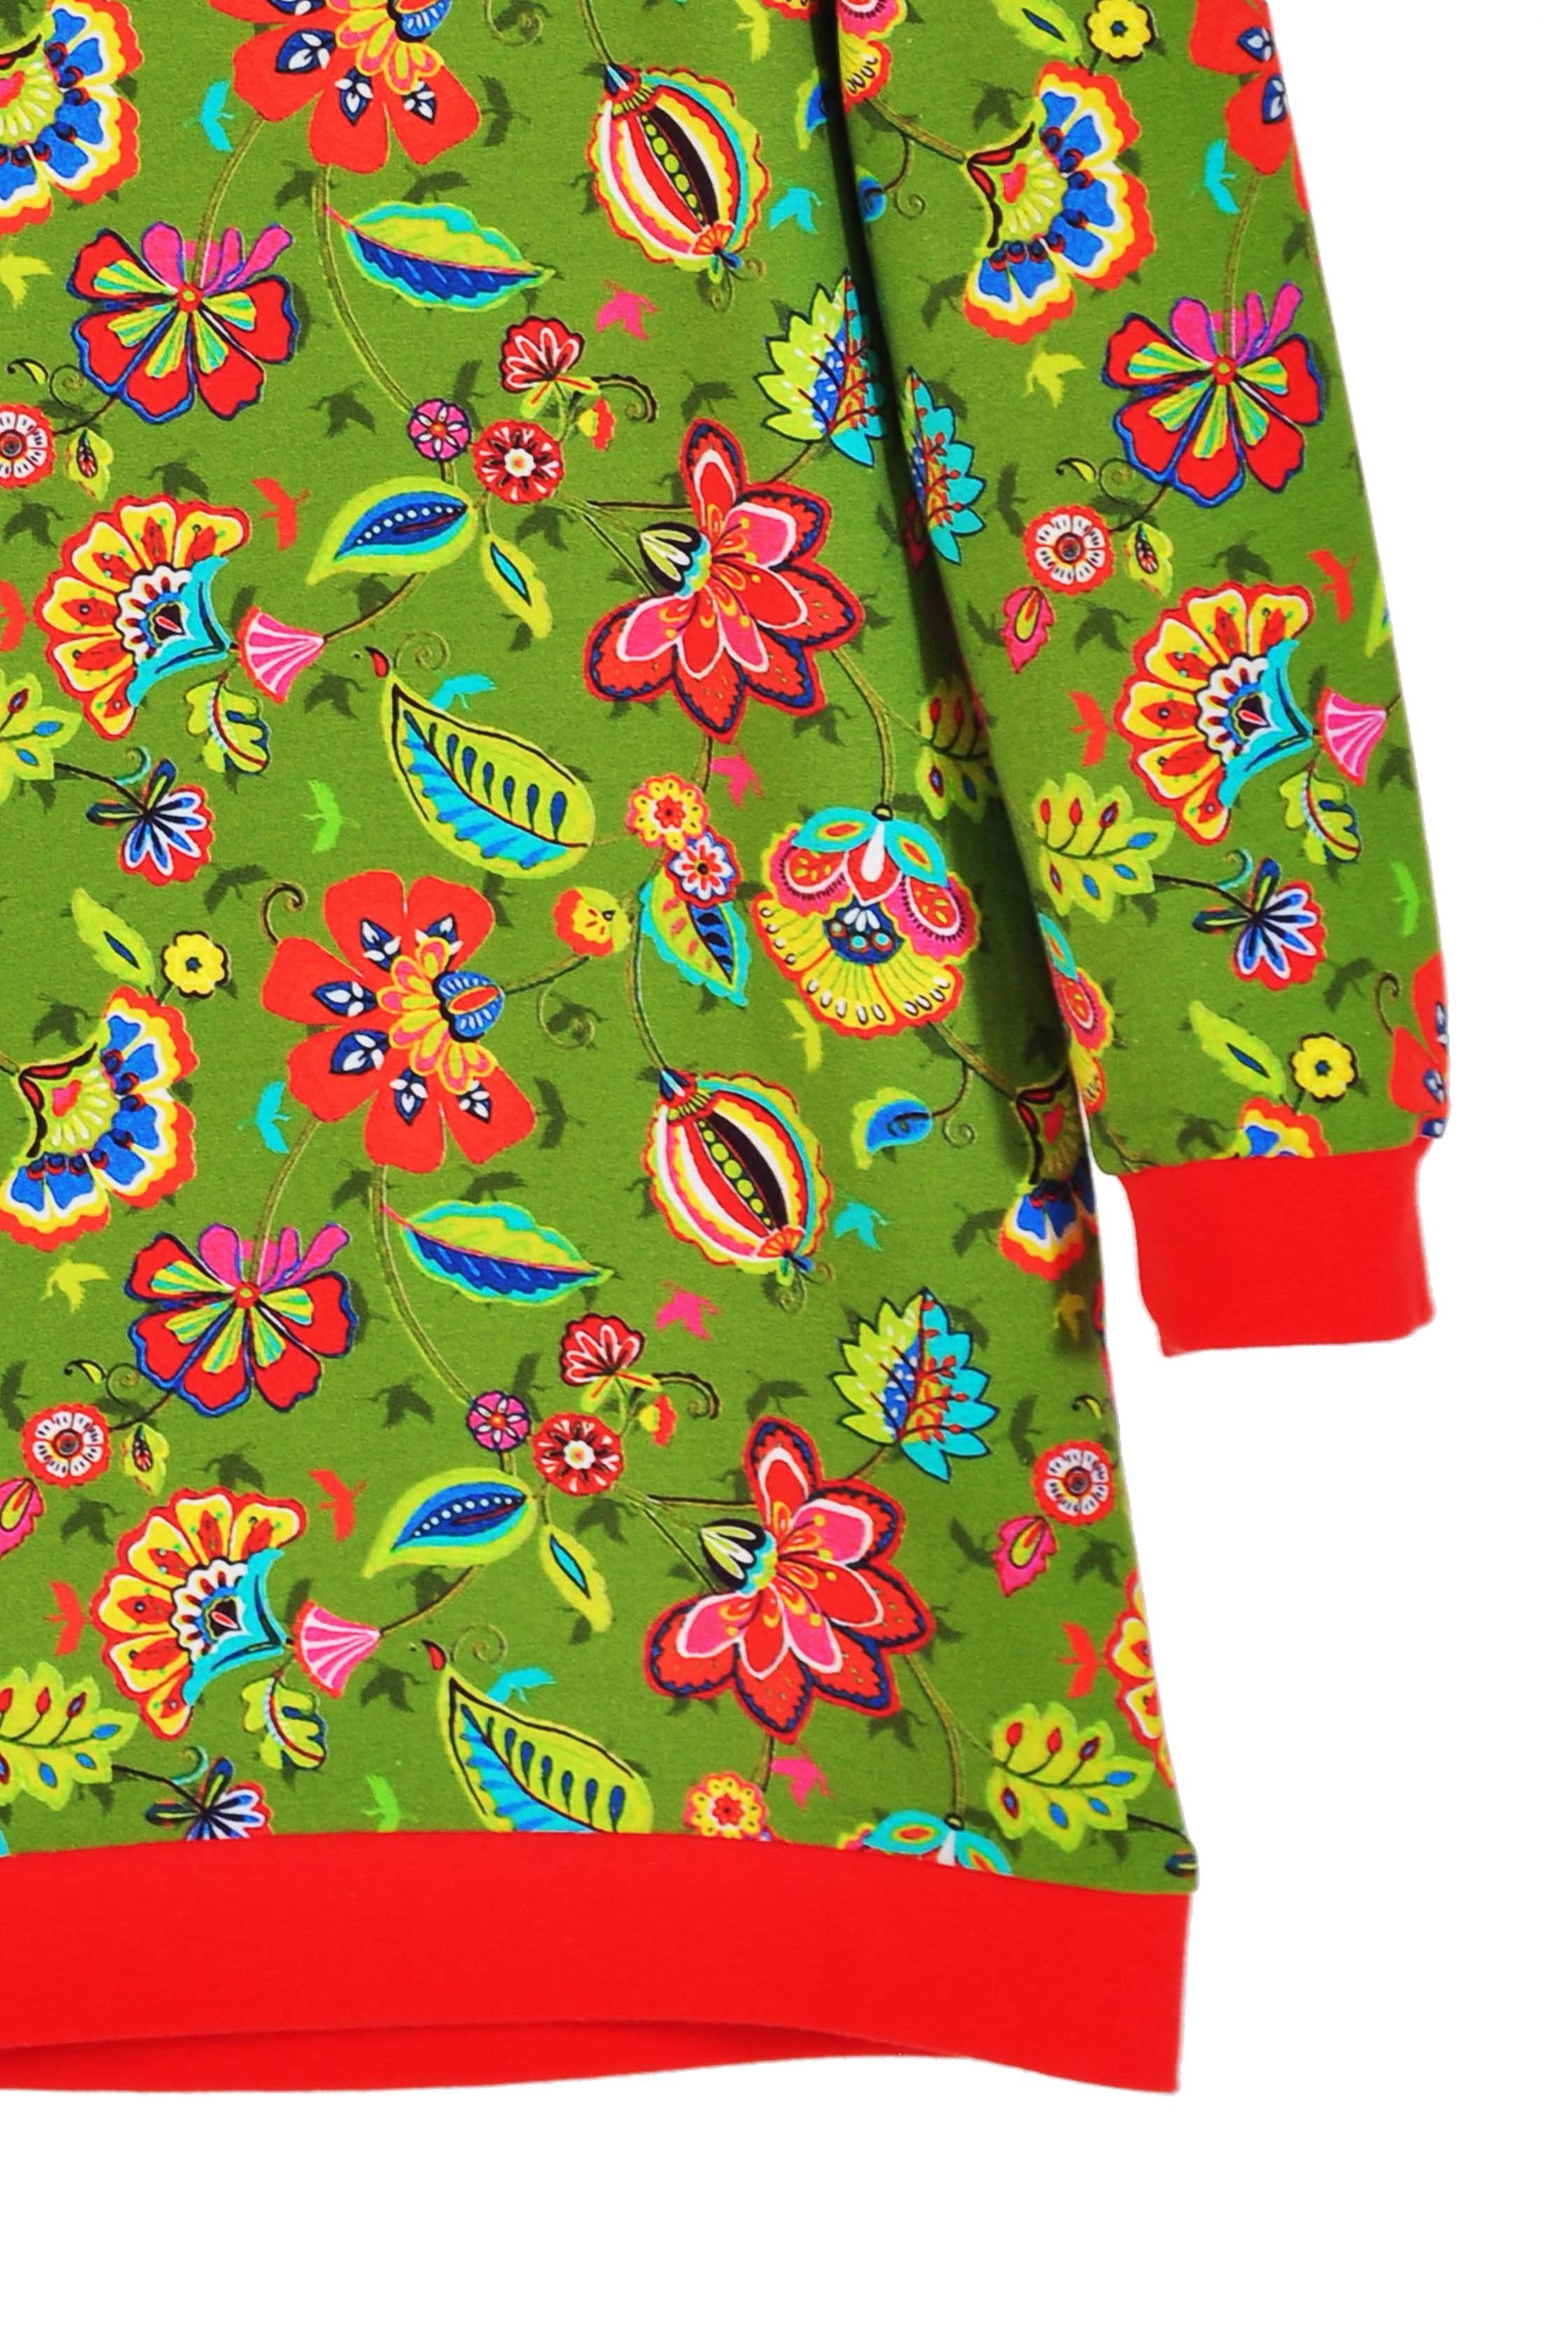 coolismo Sweatkleid oliv Blumen coole mit Sweatshirt Produktion europäische für Mädchen Kleid Motivdruck